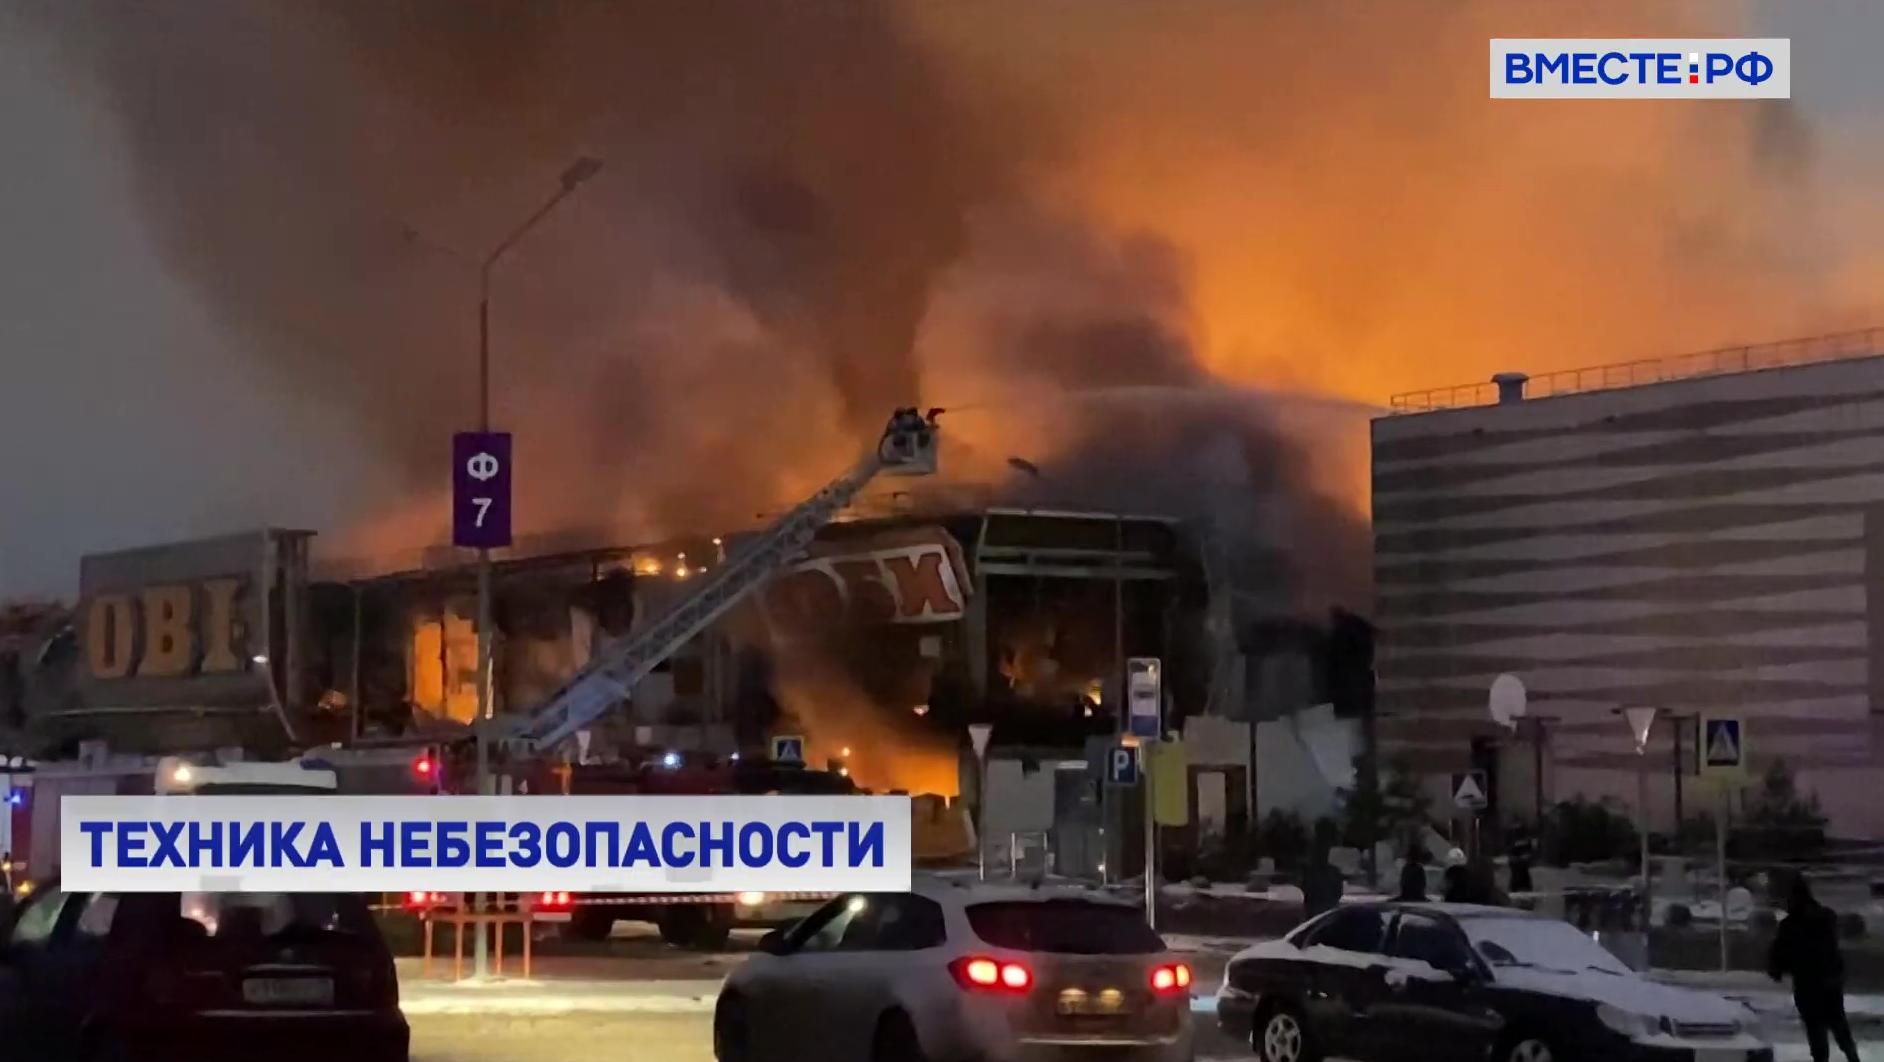 ТЦ Химки сгорел. Пожар в ТЦ мега в Калининграде. Пожар в торговом центре для студентов. Мега Химки жертвы.